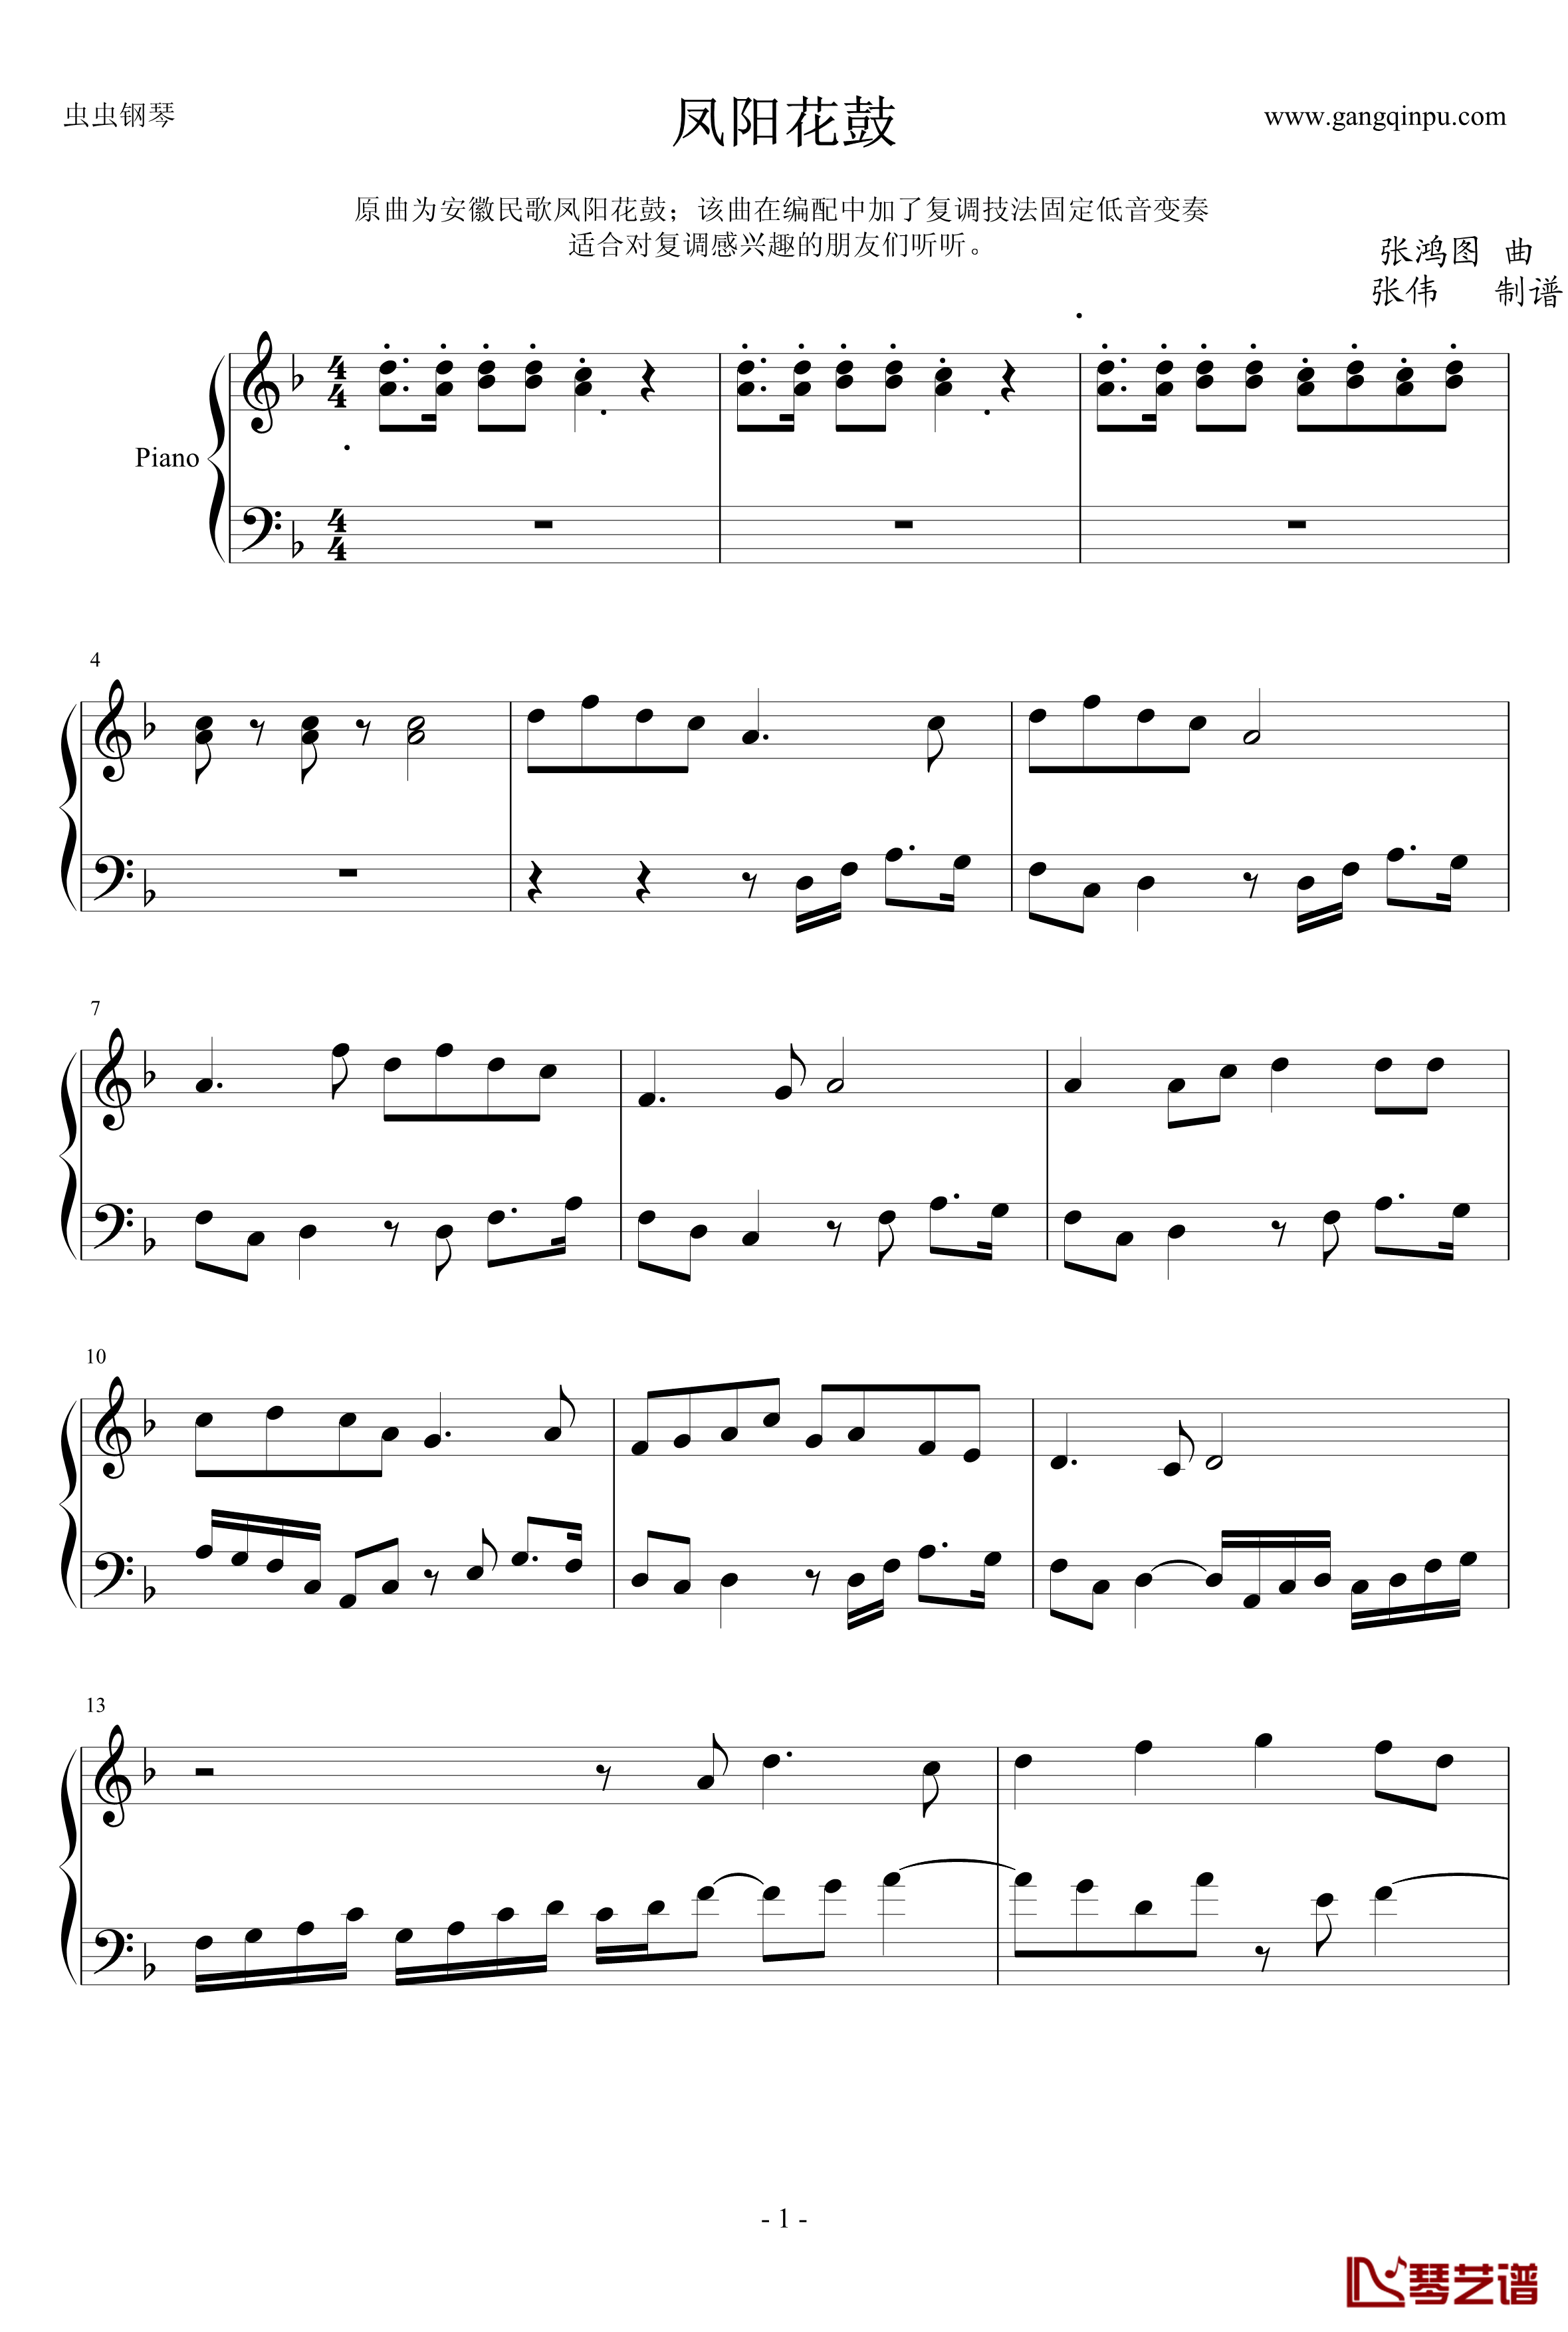 凤阳花鼓钢琴谱-张鸿图-固定低音变奏